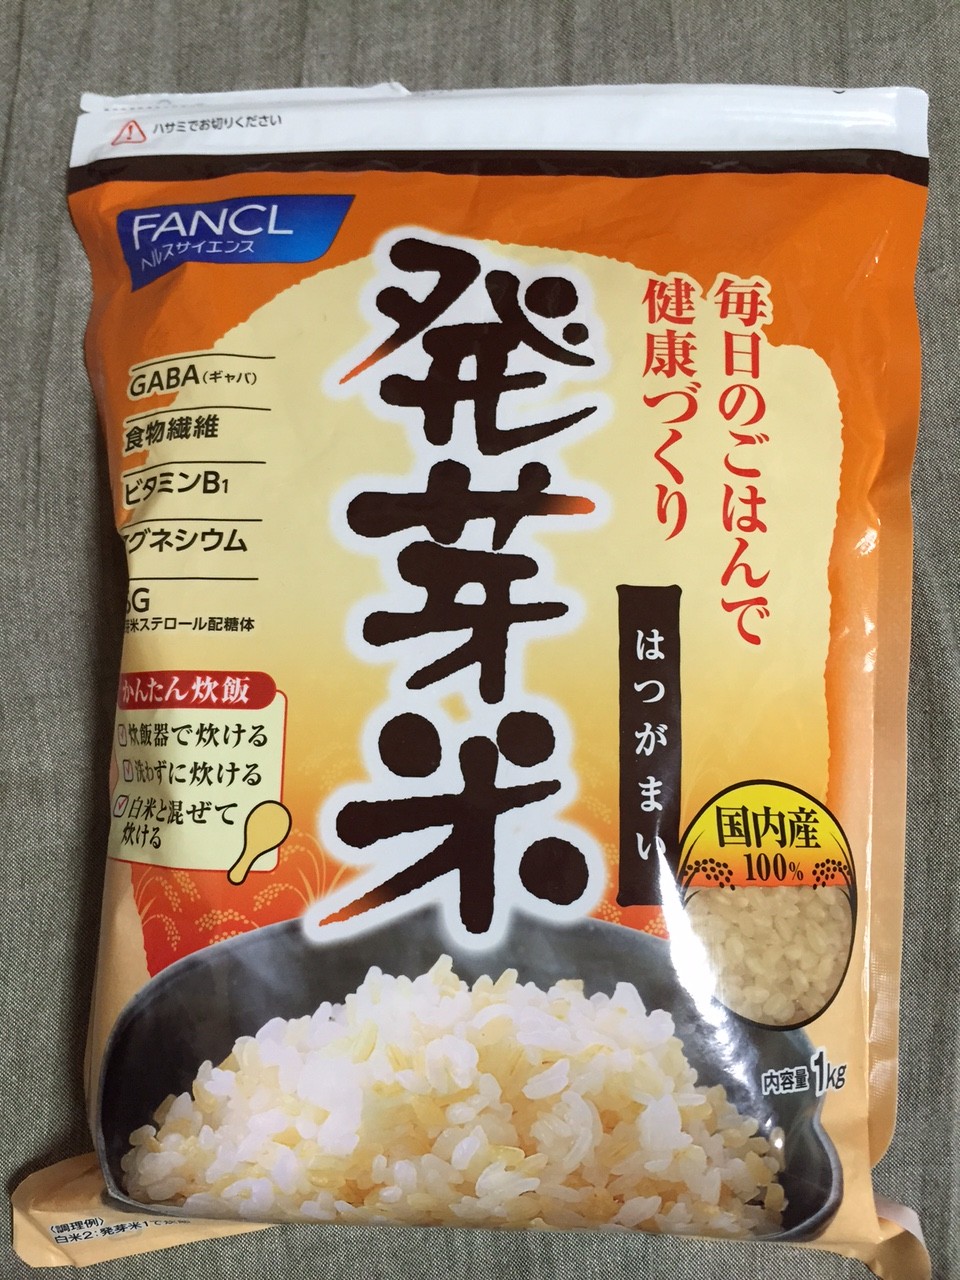 ファンケル 発芽米 商品画像